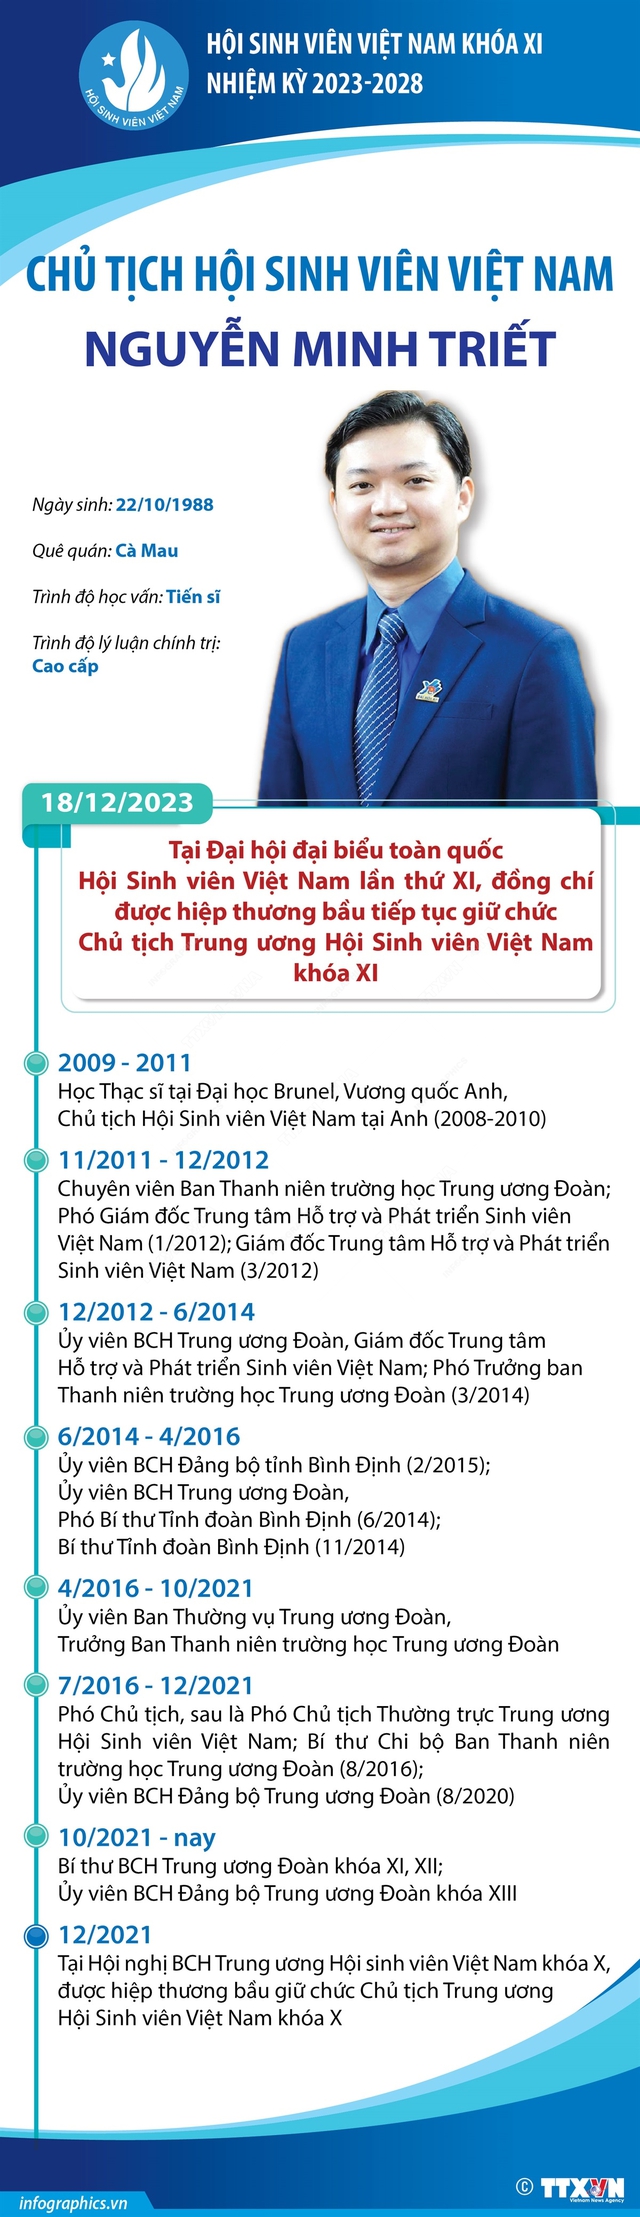 [Infographic] Chủ tịch Hội Sinh viên Việt Nam Nguyễn Minh Triết - Ảnh 1.